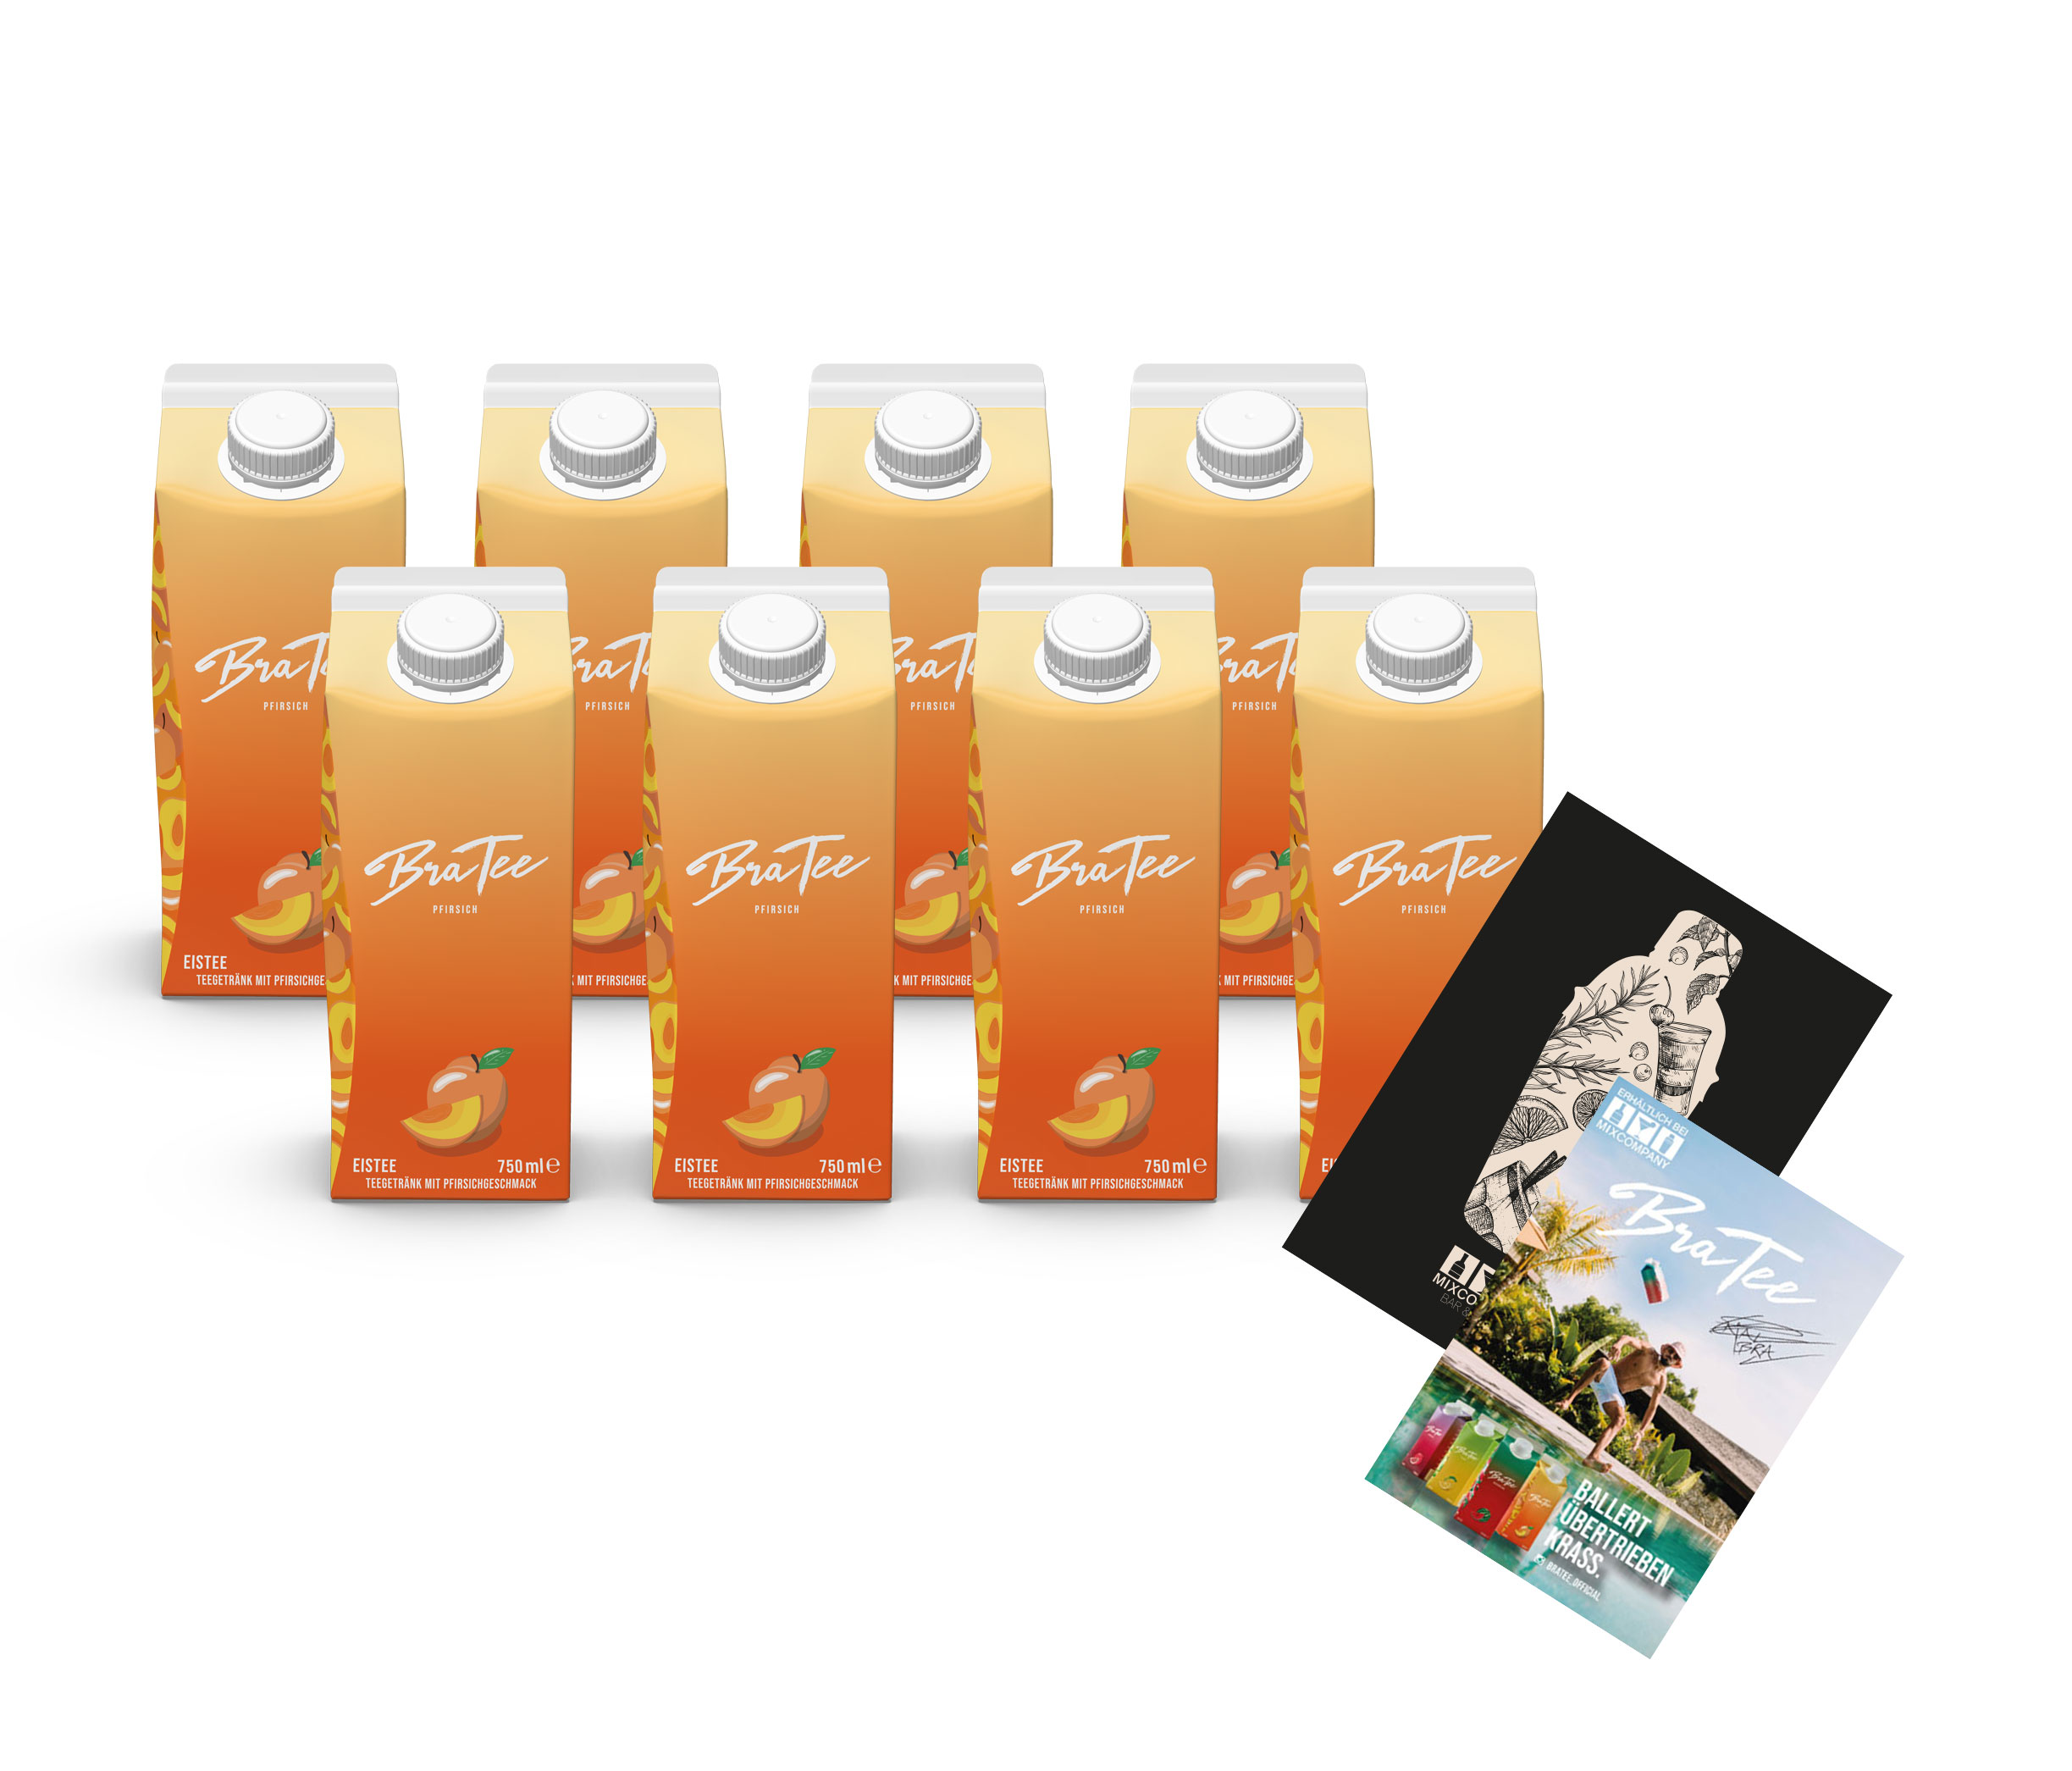 Capital BraTee MHD WARE 8er Set Eistee Pfirsich 8x 750ml Ice tea Peach + Autogrammkarte Mindesthaltbarkeit Überschritten